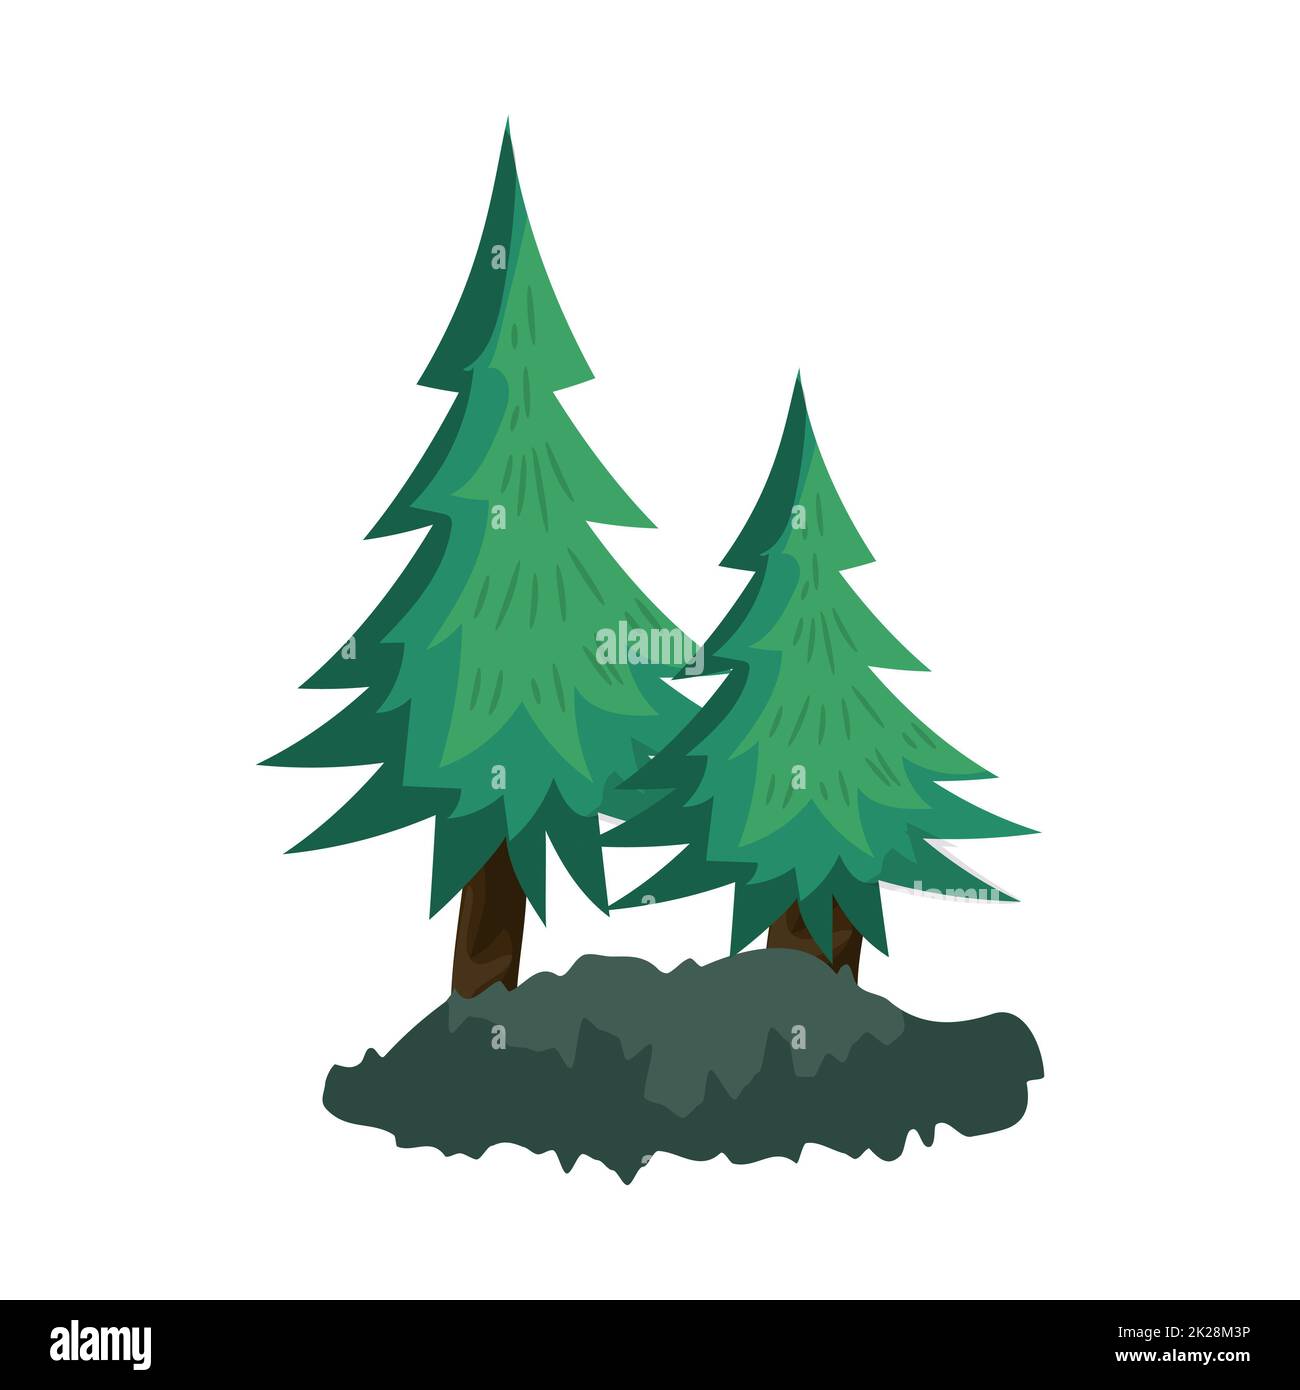 Realistische dichte grüne Tannenbäume auf weißem Hintergrund - Vektor Stockfoto